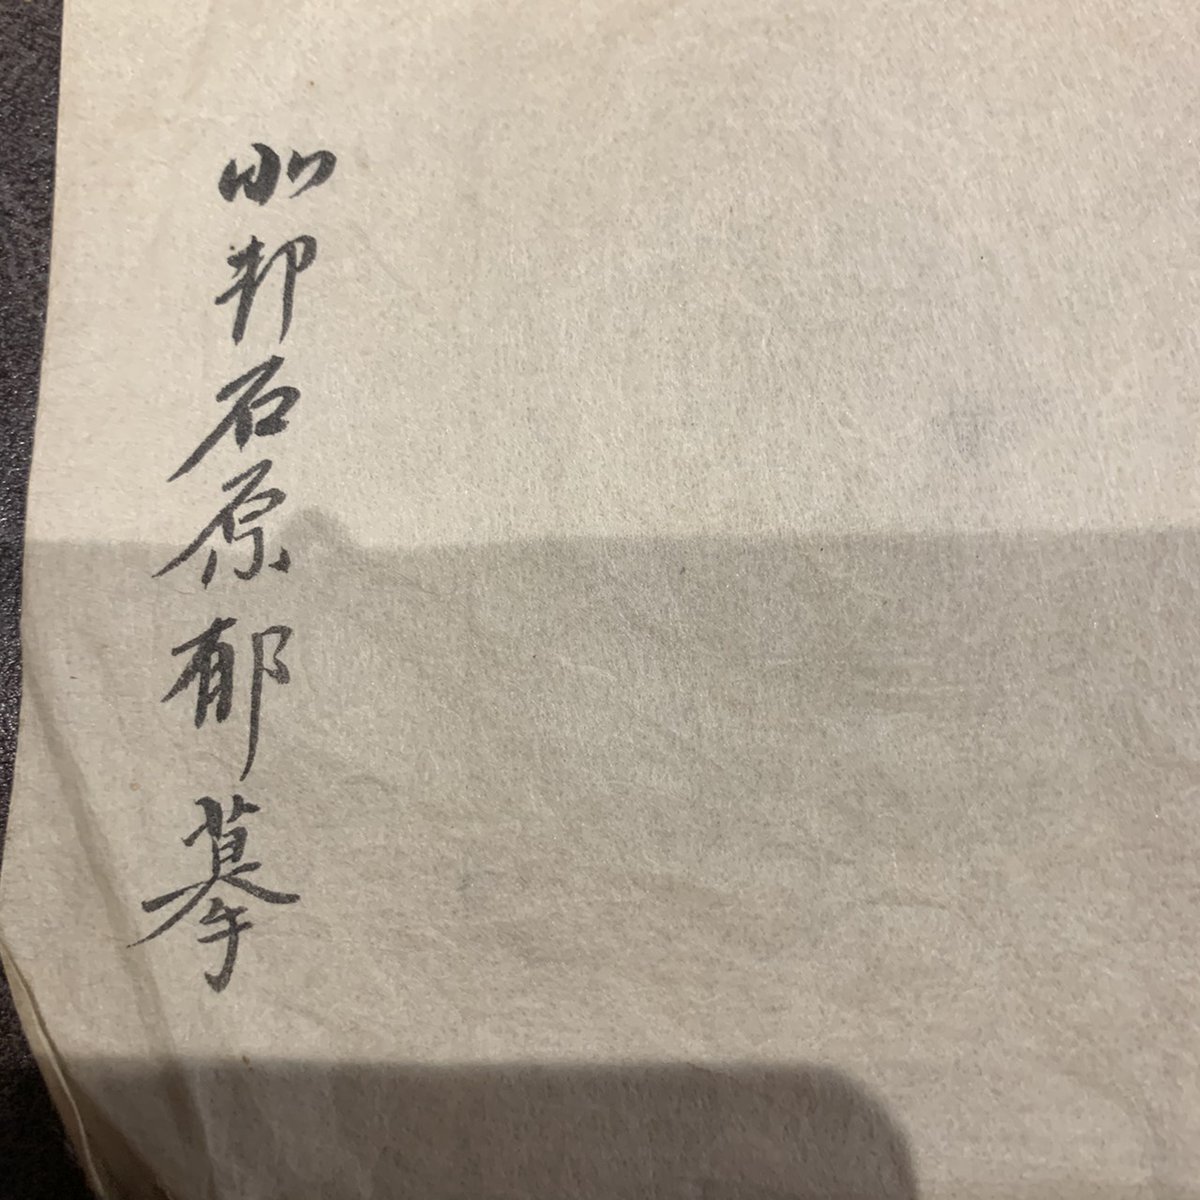 つつじ 私の母方の祖母の父方の祖父の遺品らしいのですが 最後の 莫に手 の漢字が分からず困ってます 詳しい方がいらっしゃいましたらご協力下さい Help 旧字 異体字